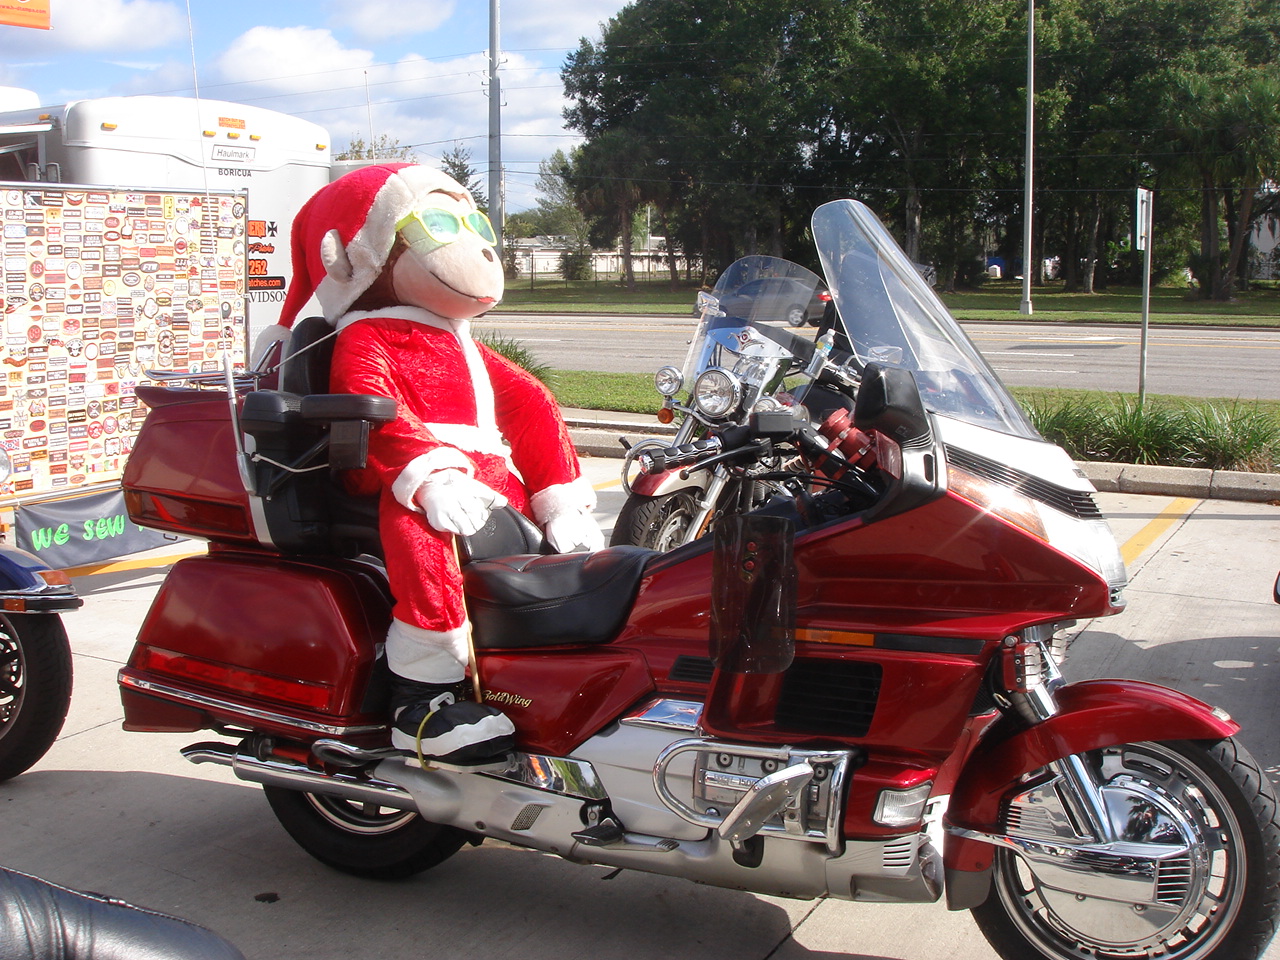 Teddy Bear Santa Clause on a motorcycle.